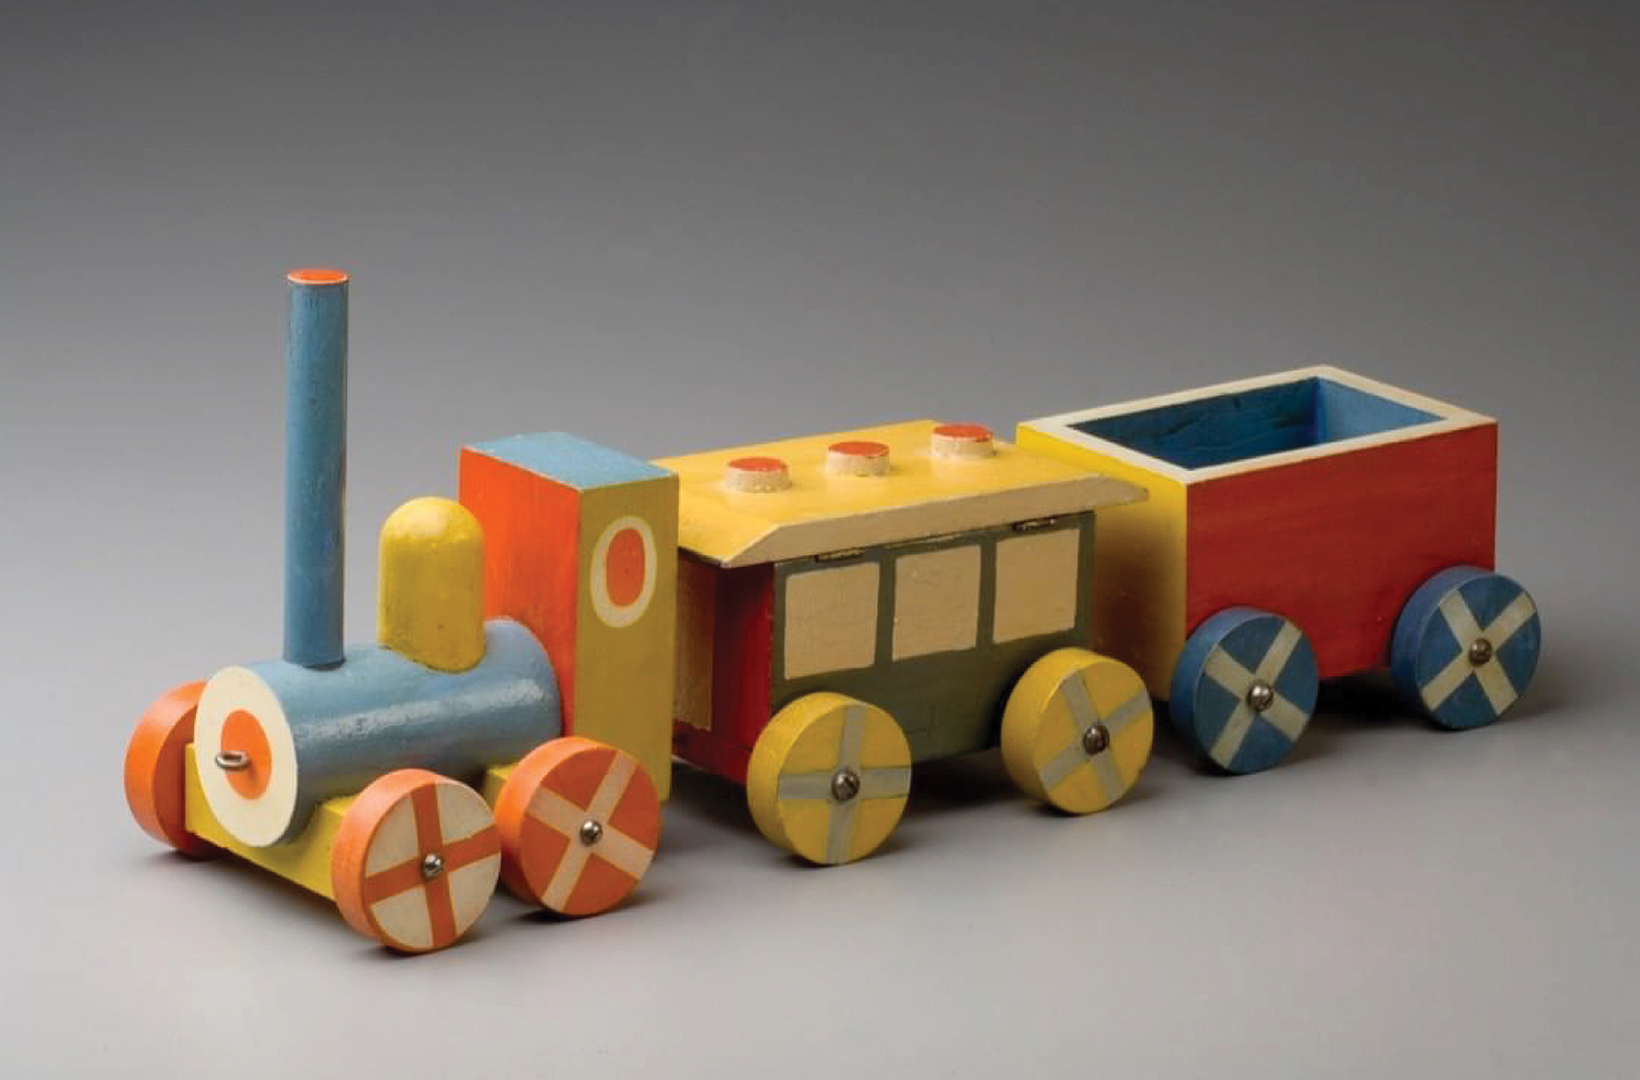 wooden toy train designed by Ladislav Sutnar